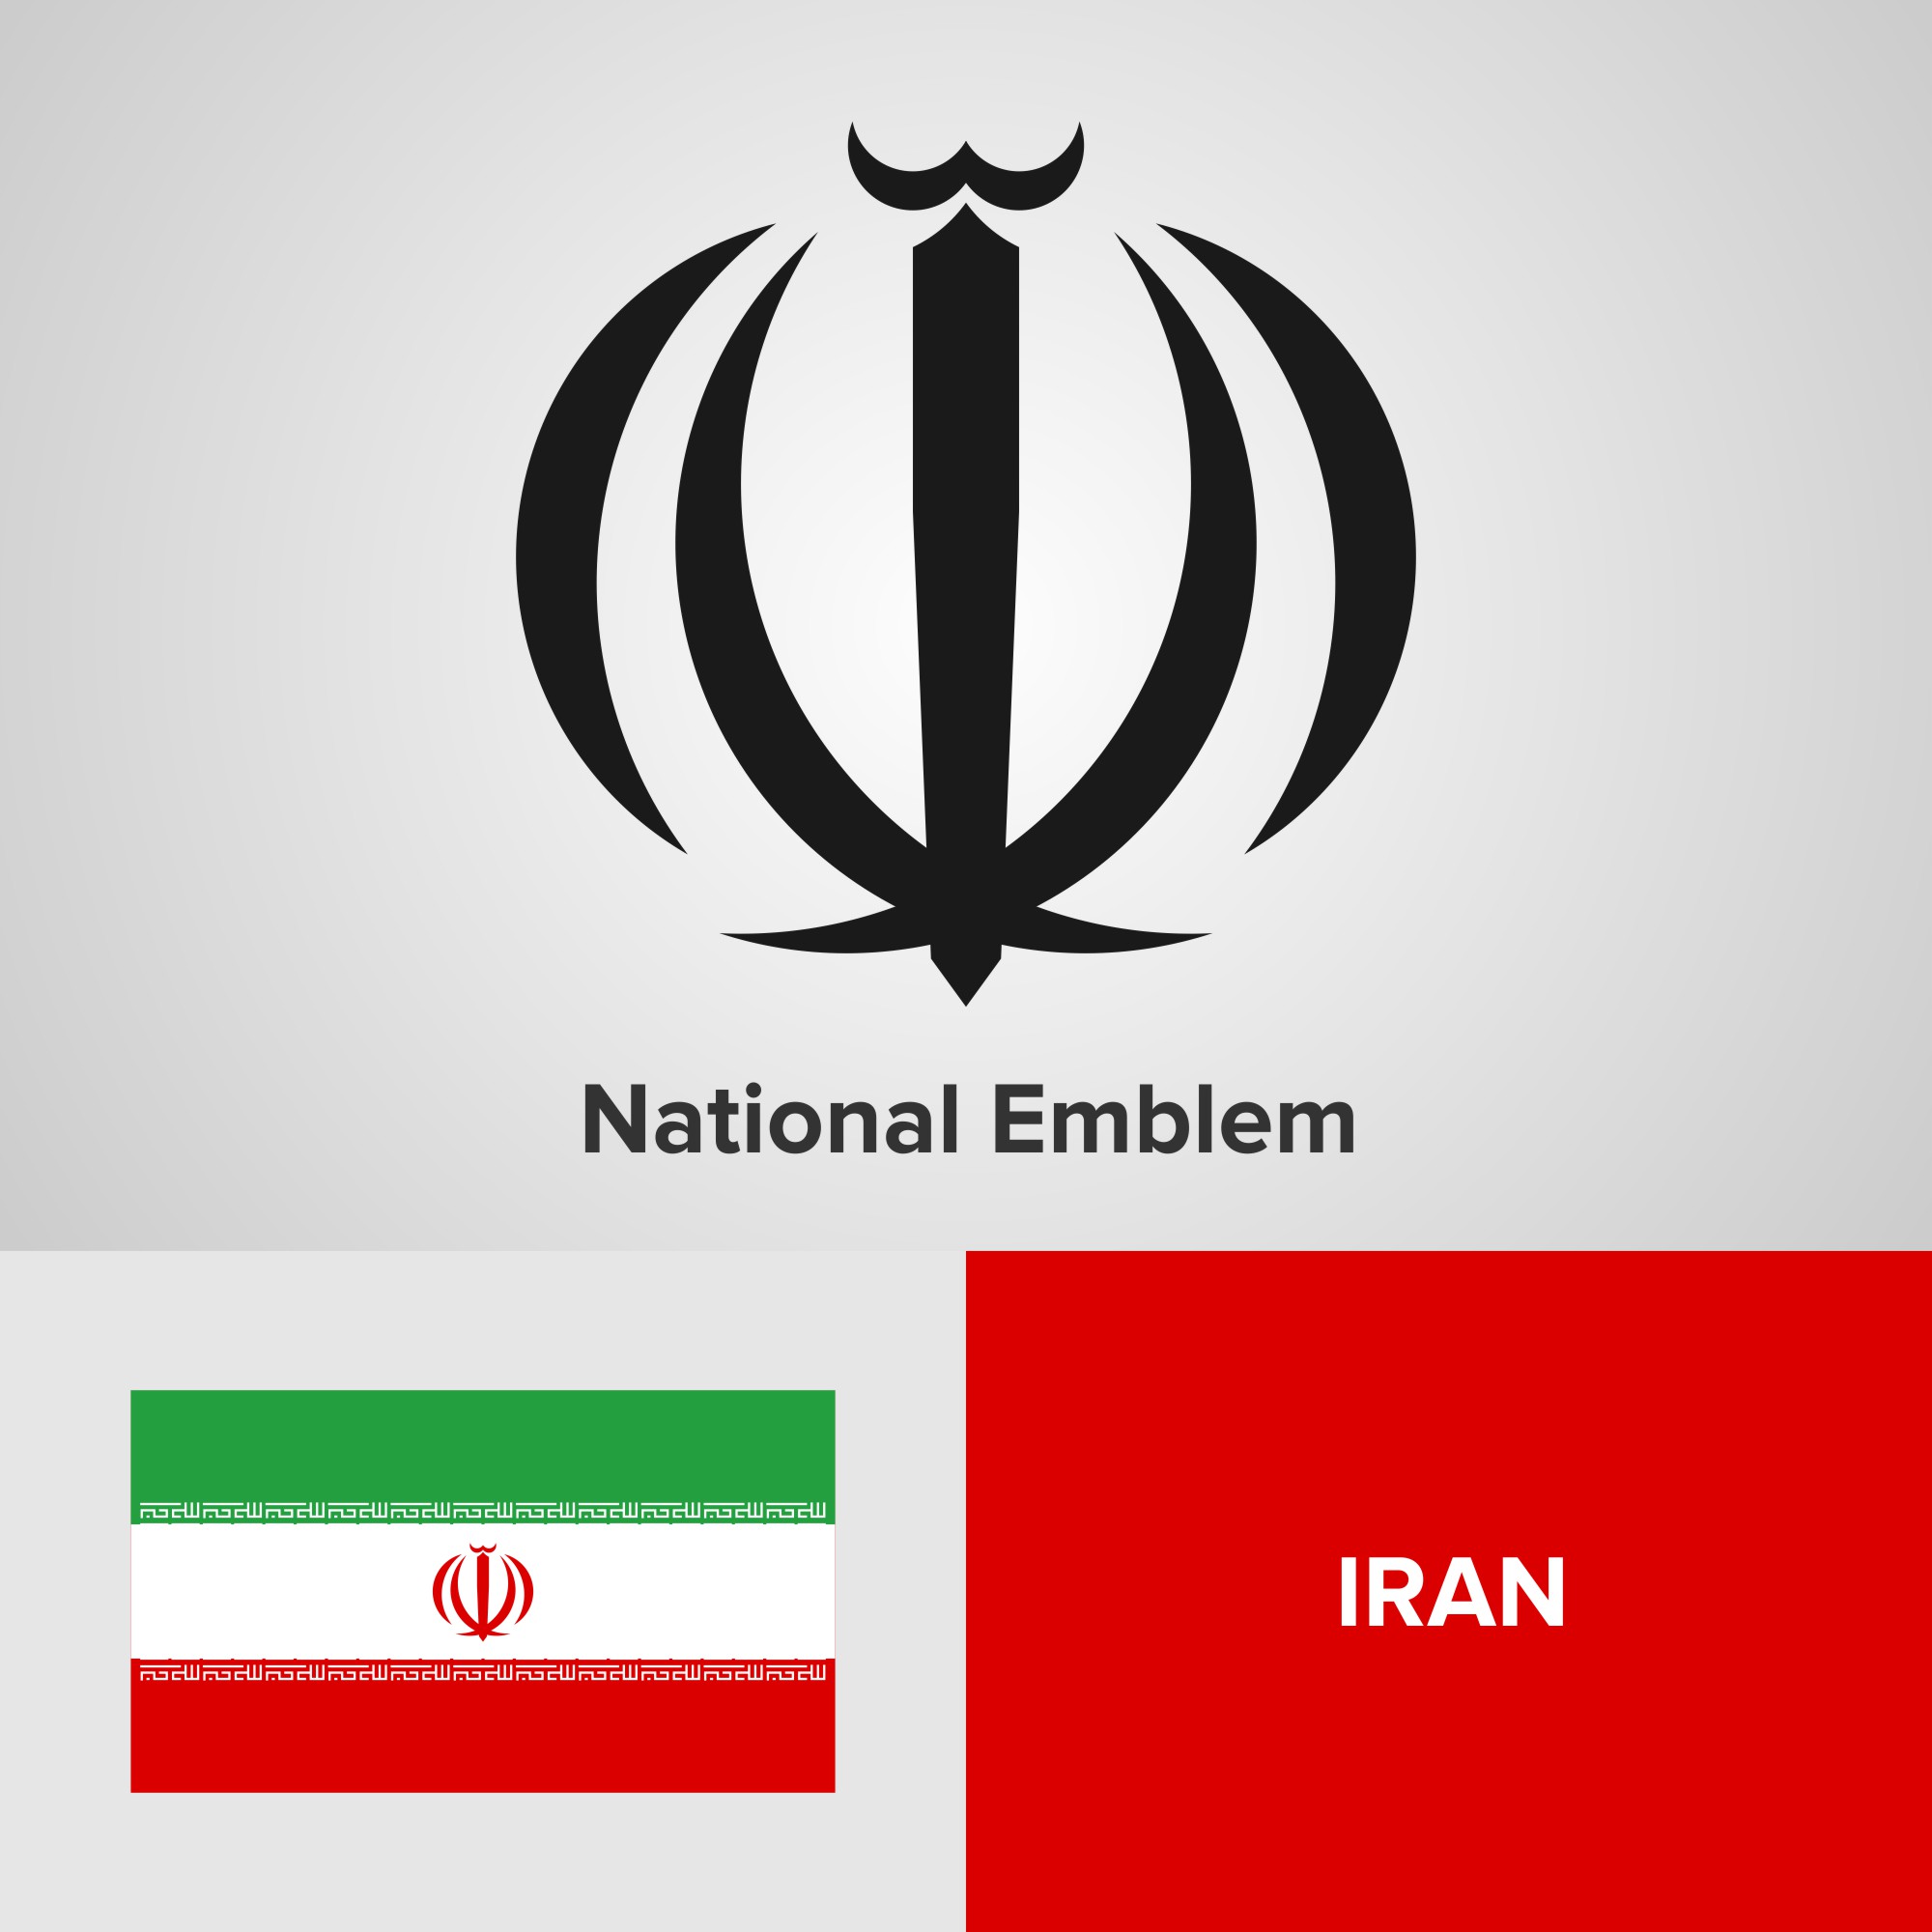 Герб ирана. Иран флаг и герб. Символ на флаге Ирана. Иранский герб.